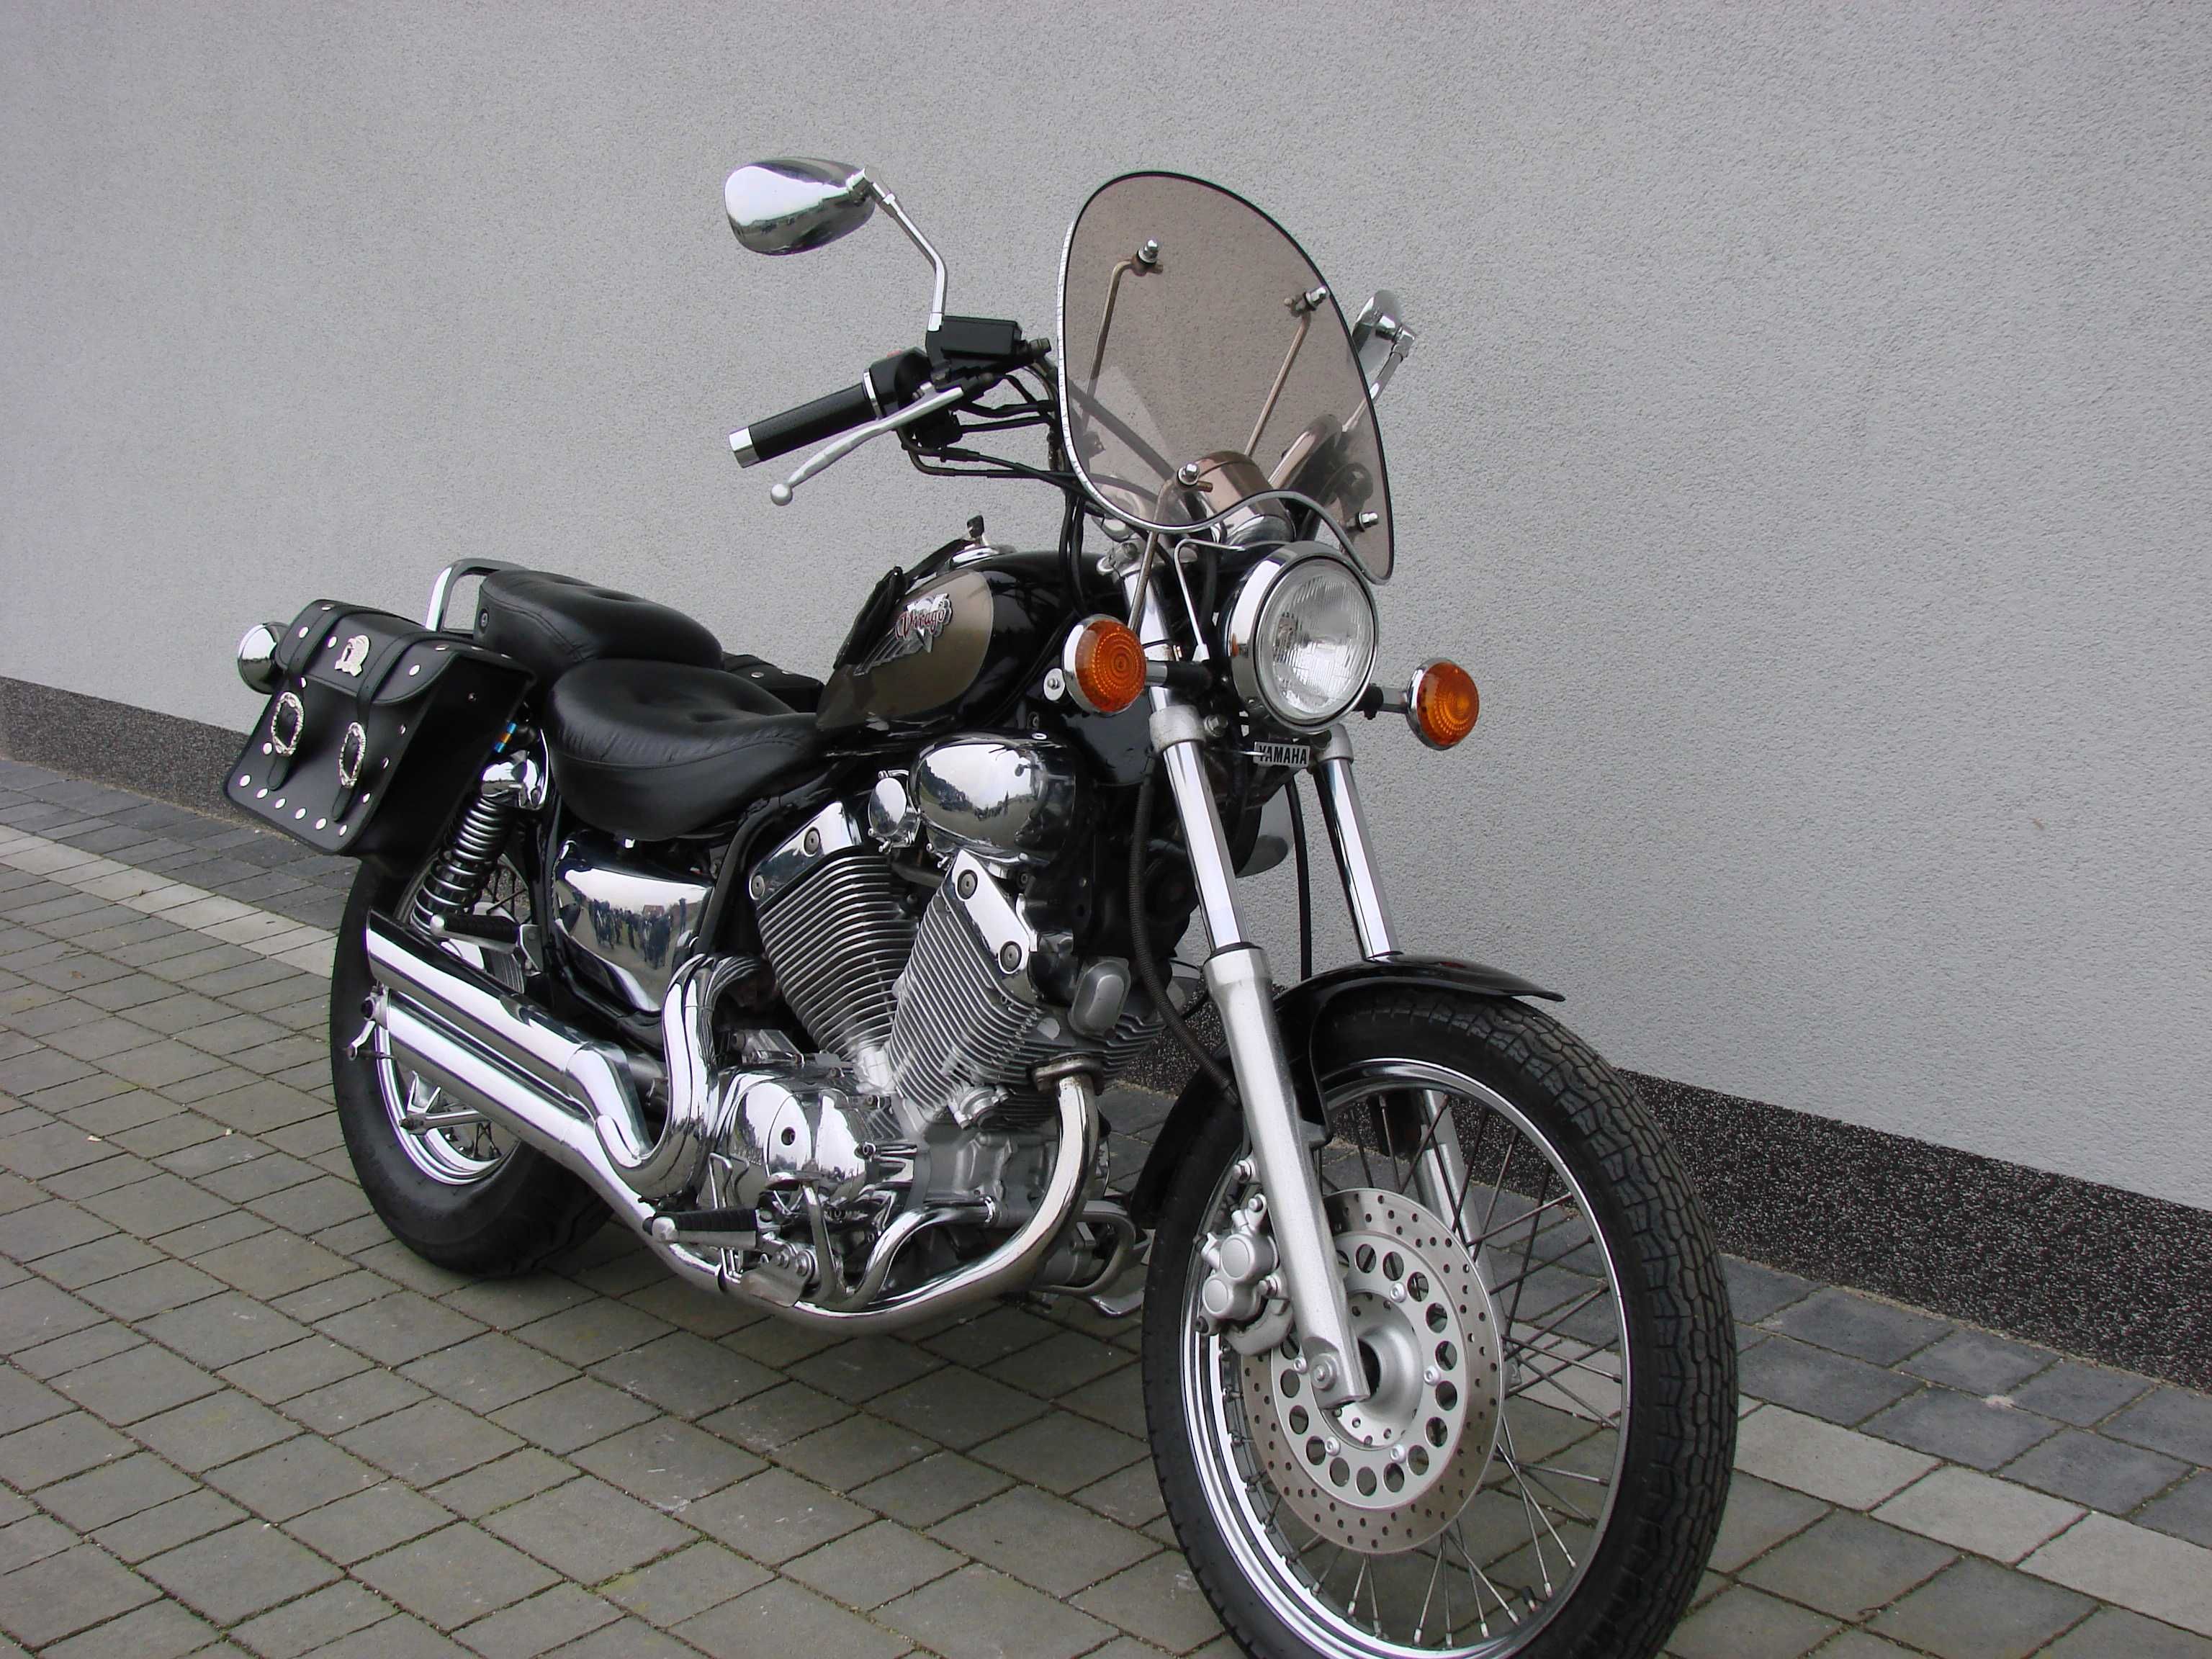 Yamaha XV 535 Virago model DX